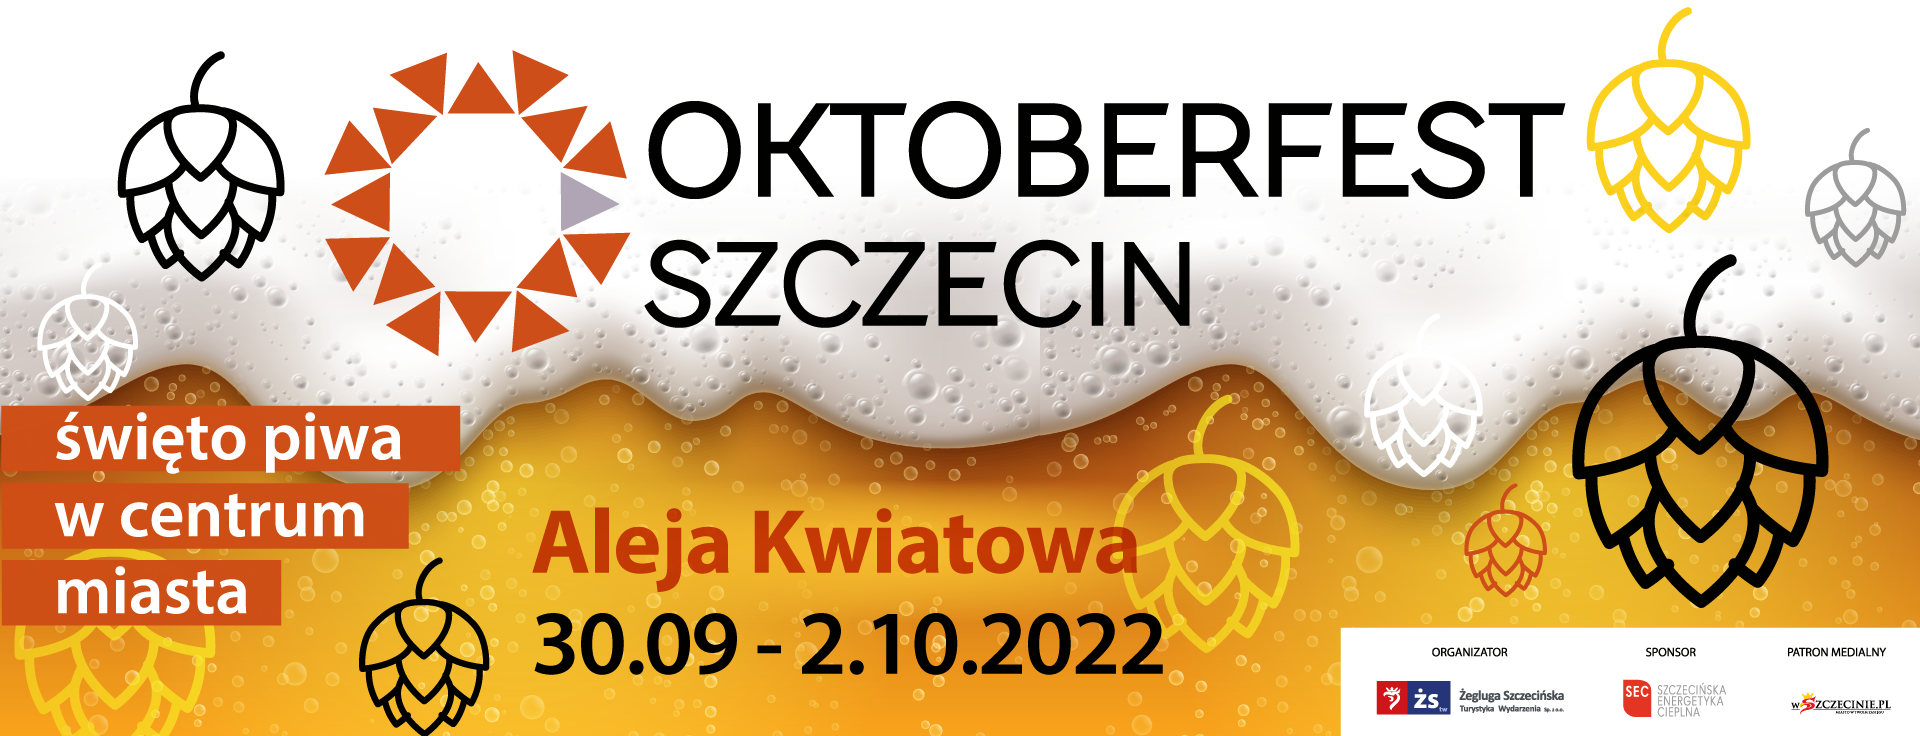 Oktoberfest Szczecin